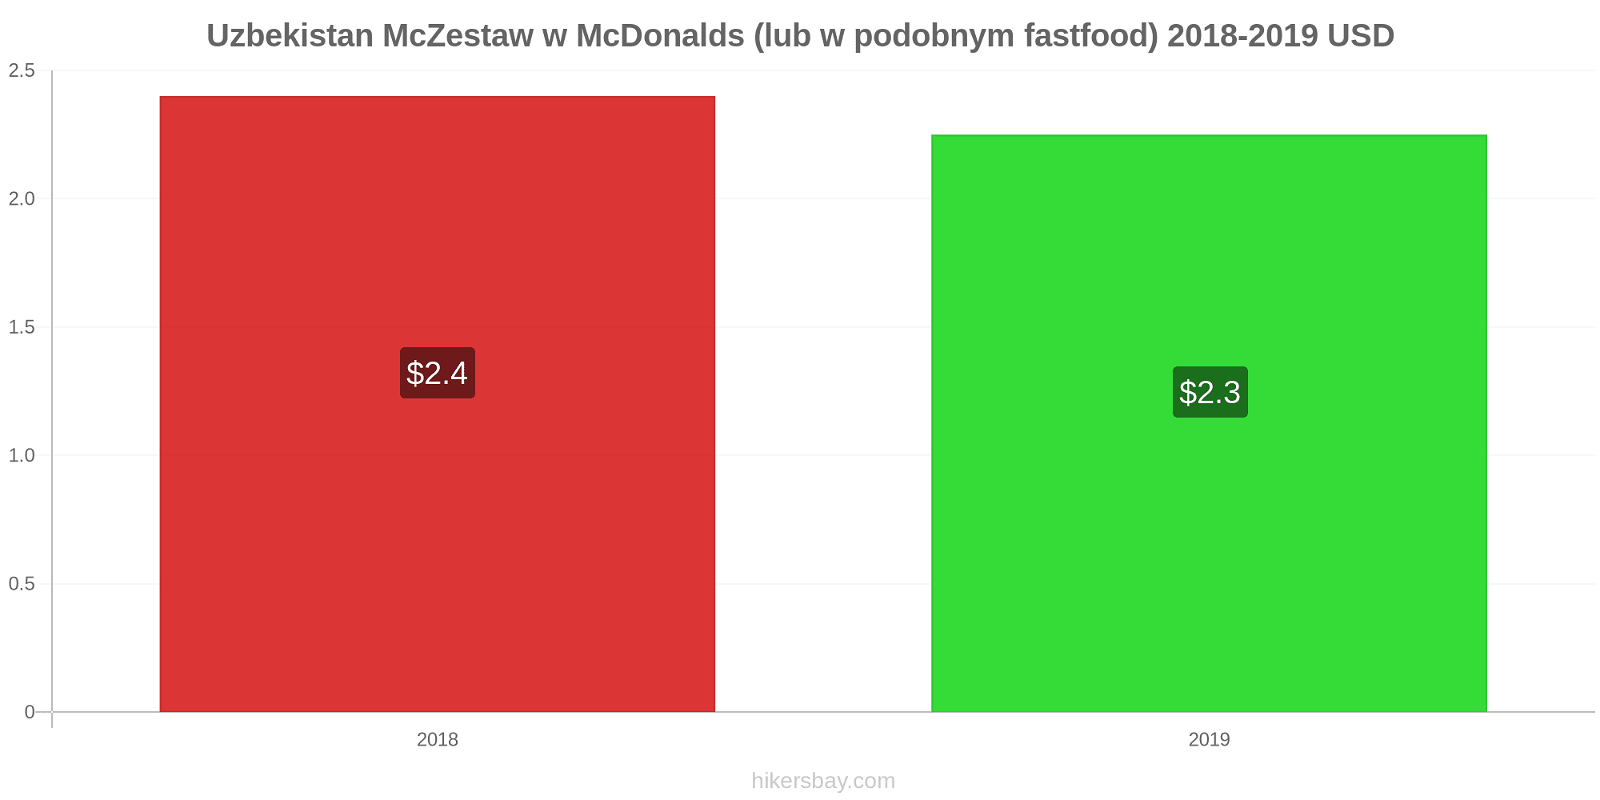 Uzbekistan zmiany cen McZestaw w McDonalds (lub w podobnym fastfood) hikersbay.com